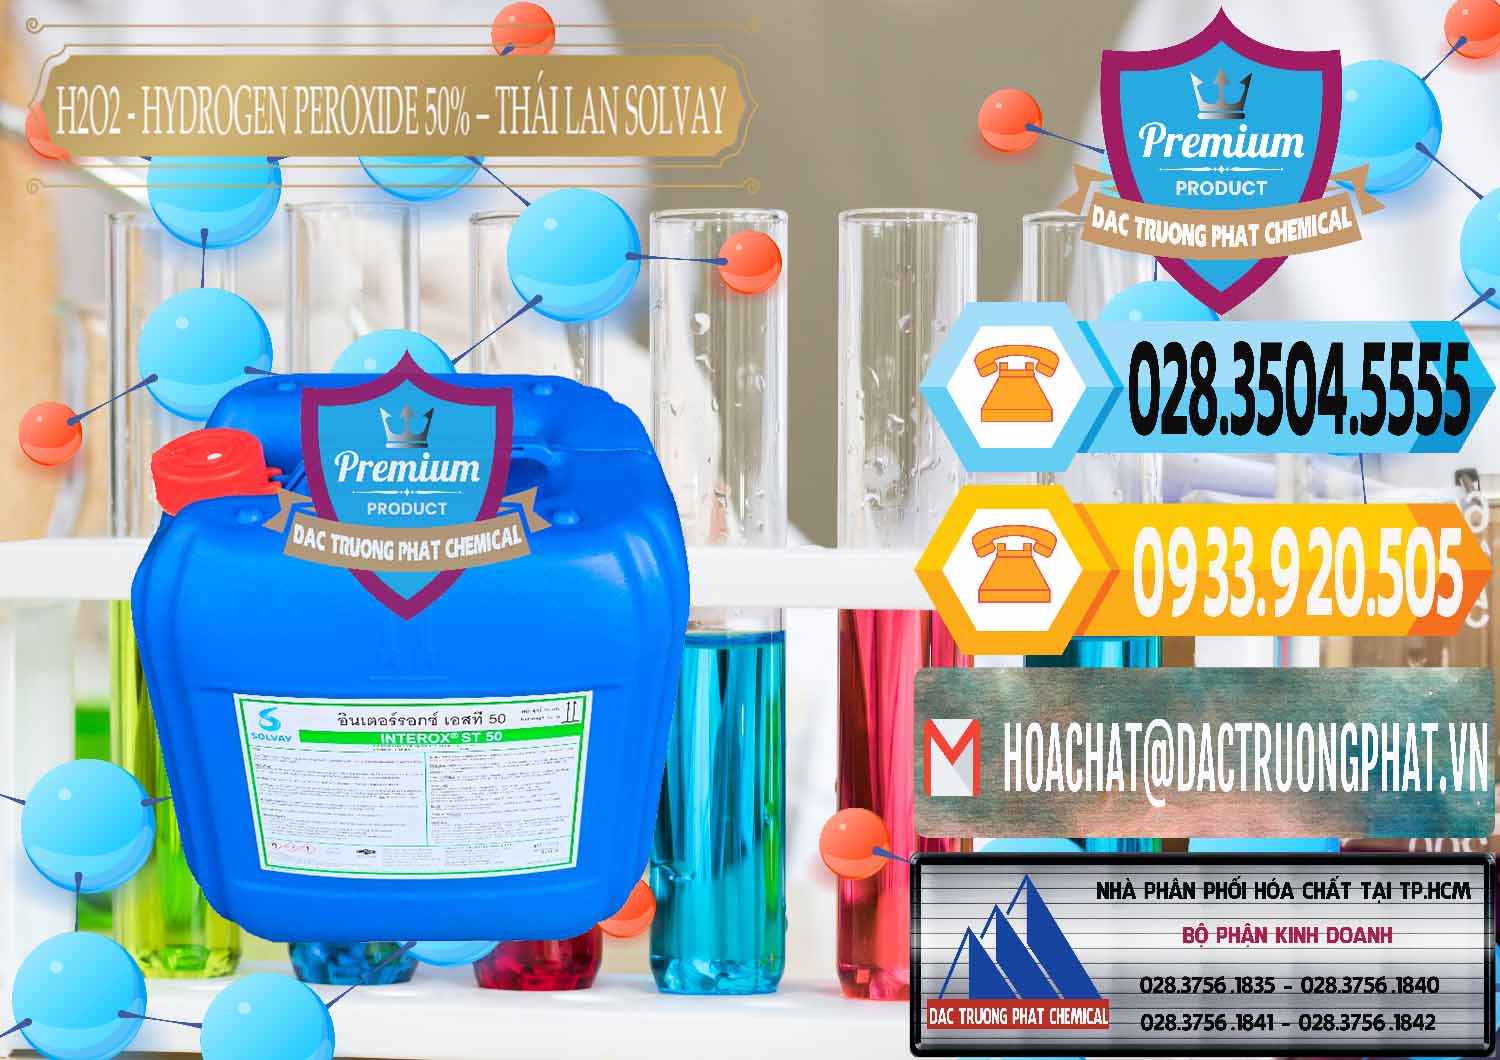 Công ty bán - cung cấp H2O2 - Hydrogen Peroxide 50% Thái Lan Solvay - 0068 - Công ty chuyên phân phối ( bán ) hóa chất tại TP.HCM - hoachattayrua.net